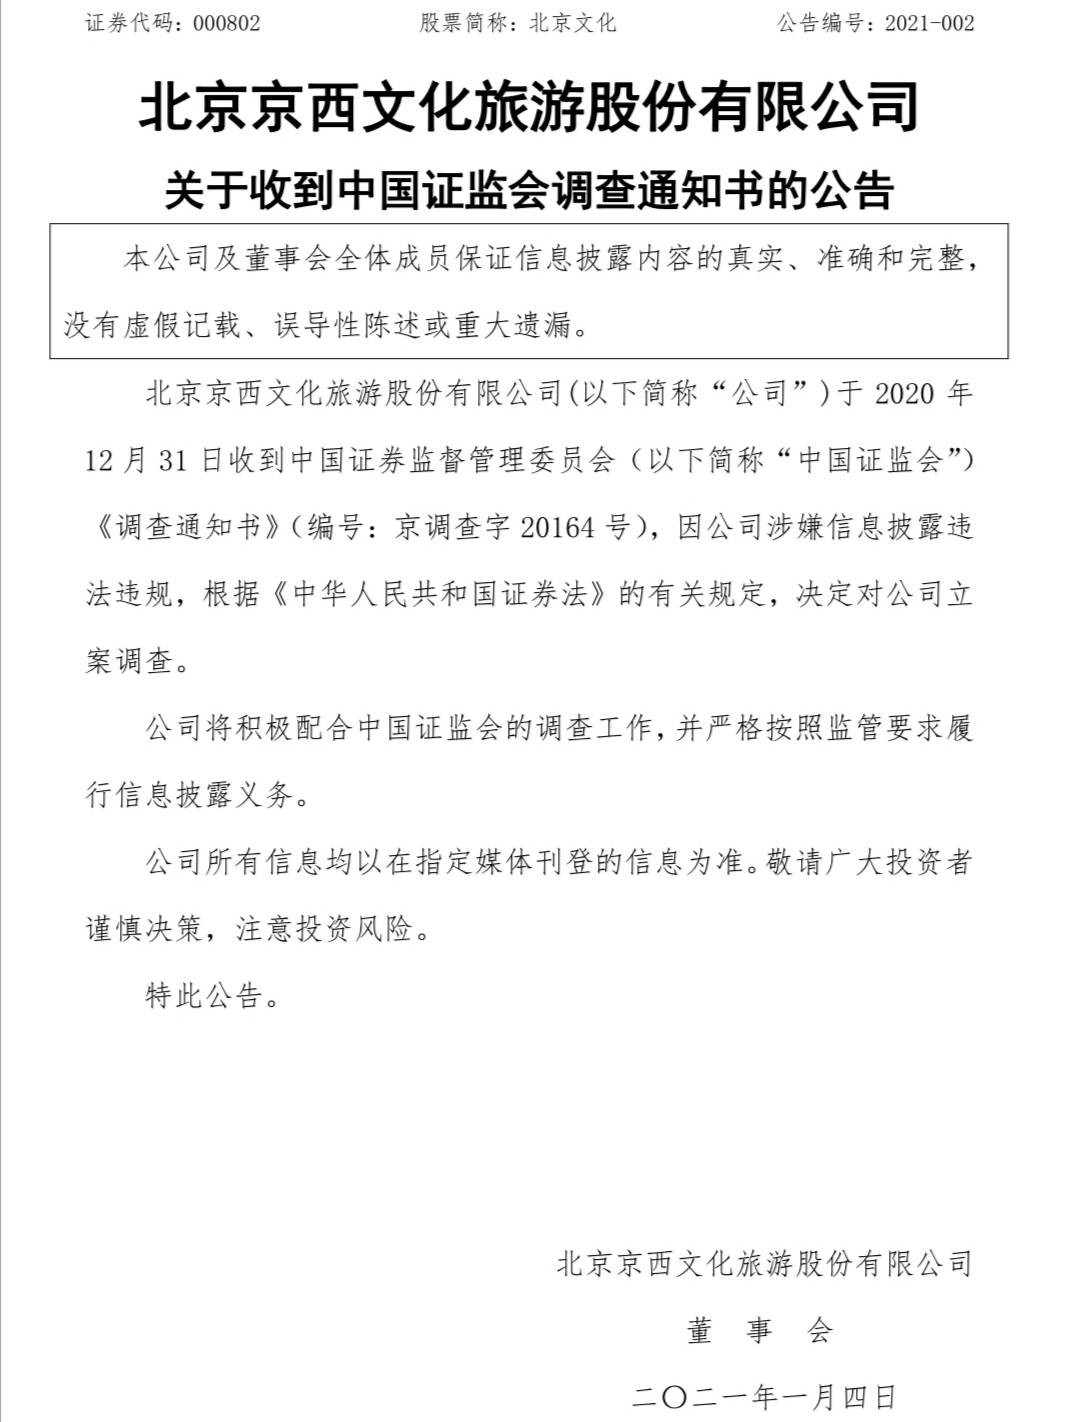 因涉嫌信息披露违法违规 证监会决定北京文化立案调查